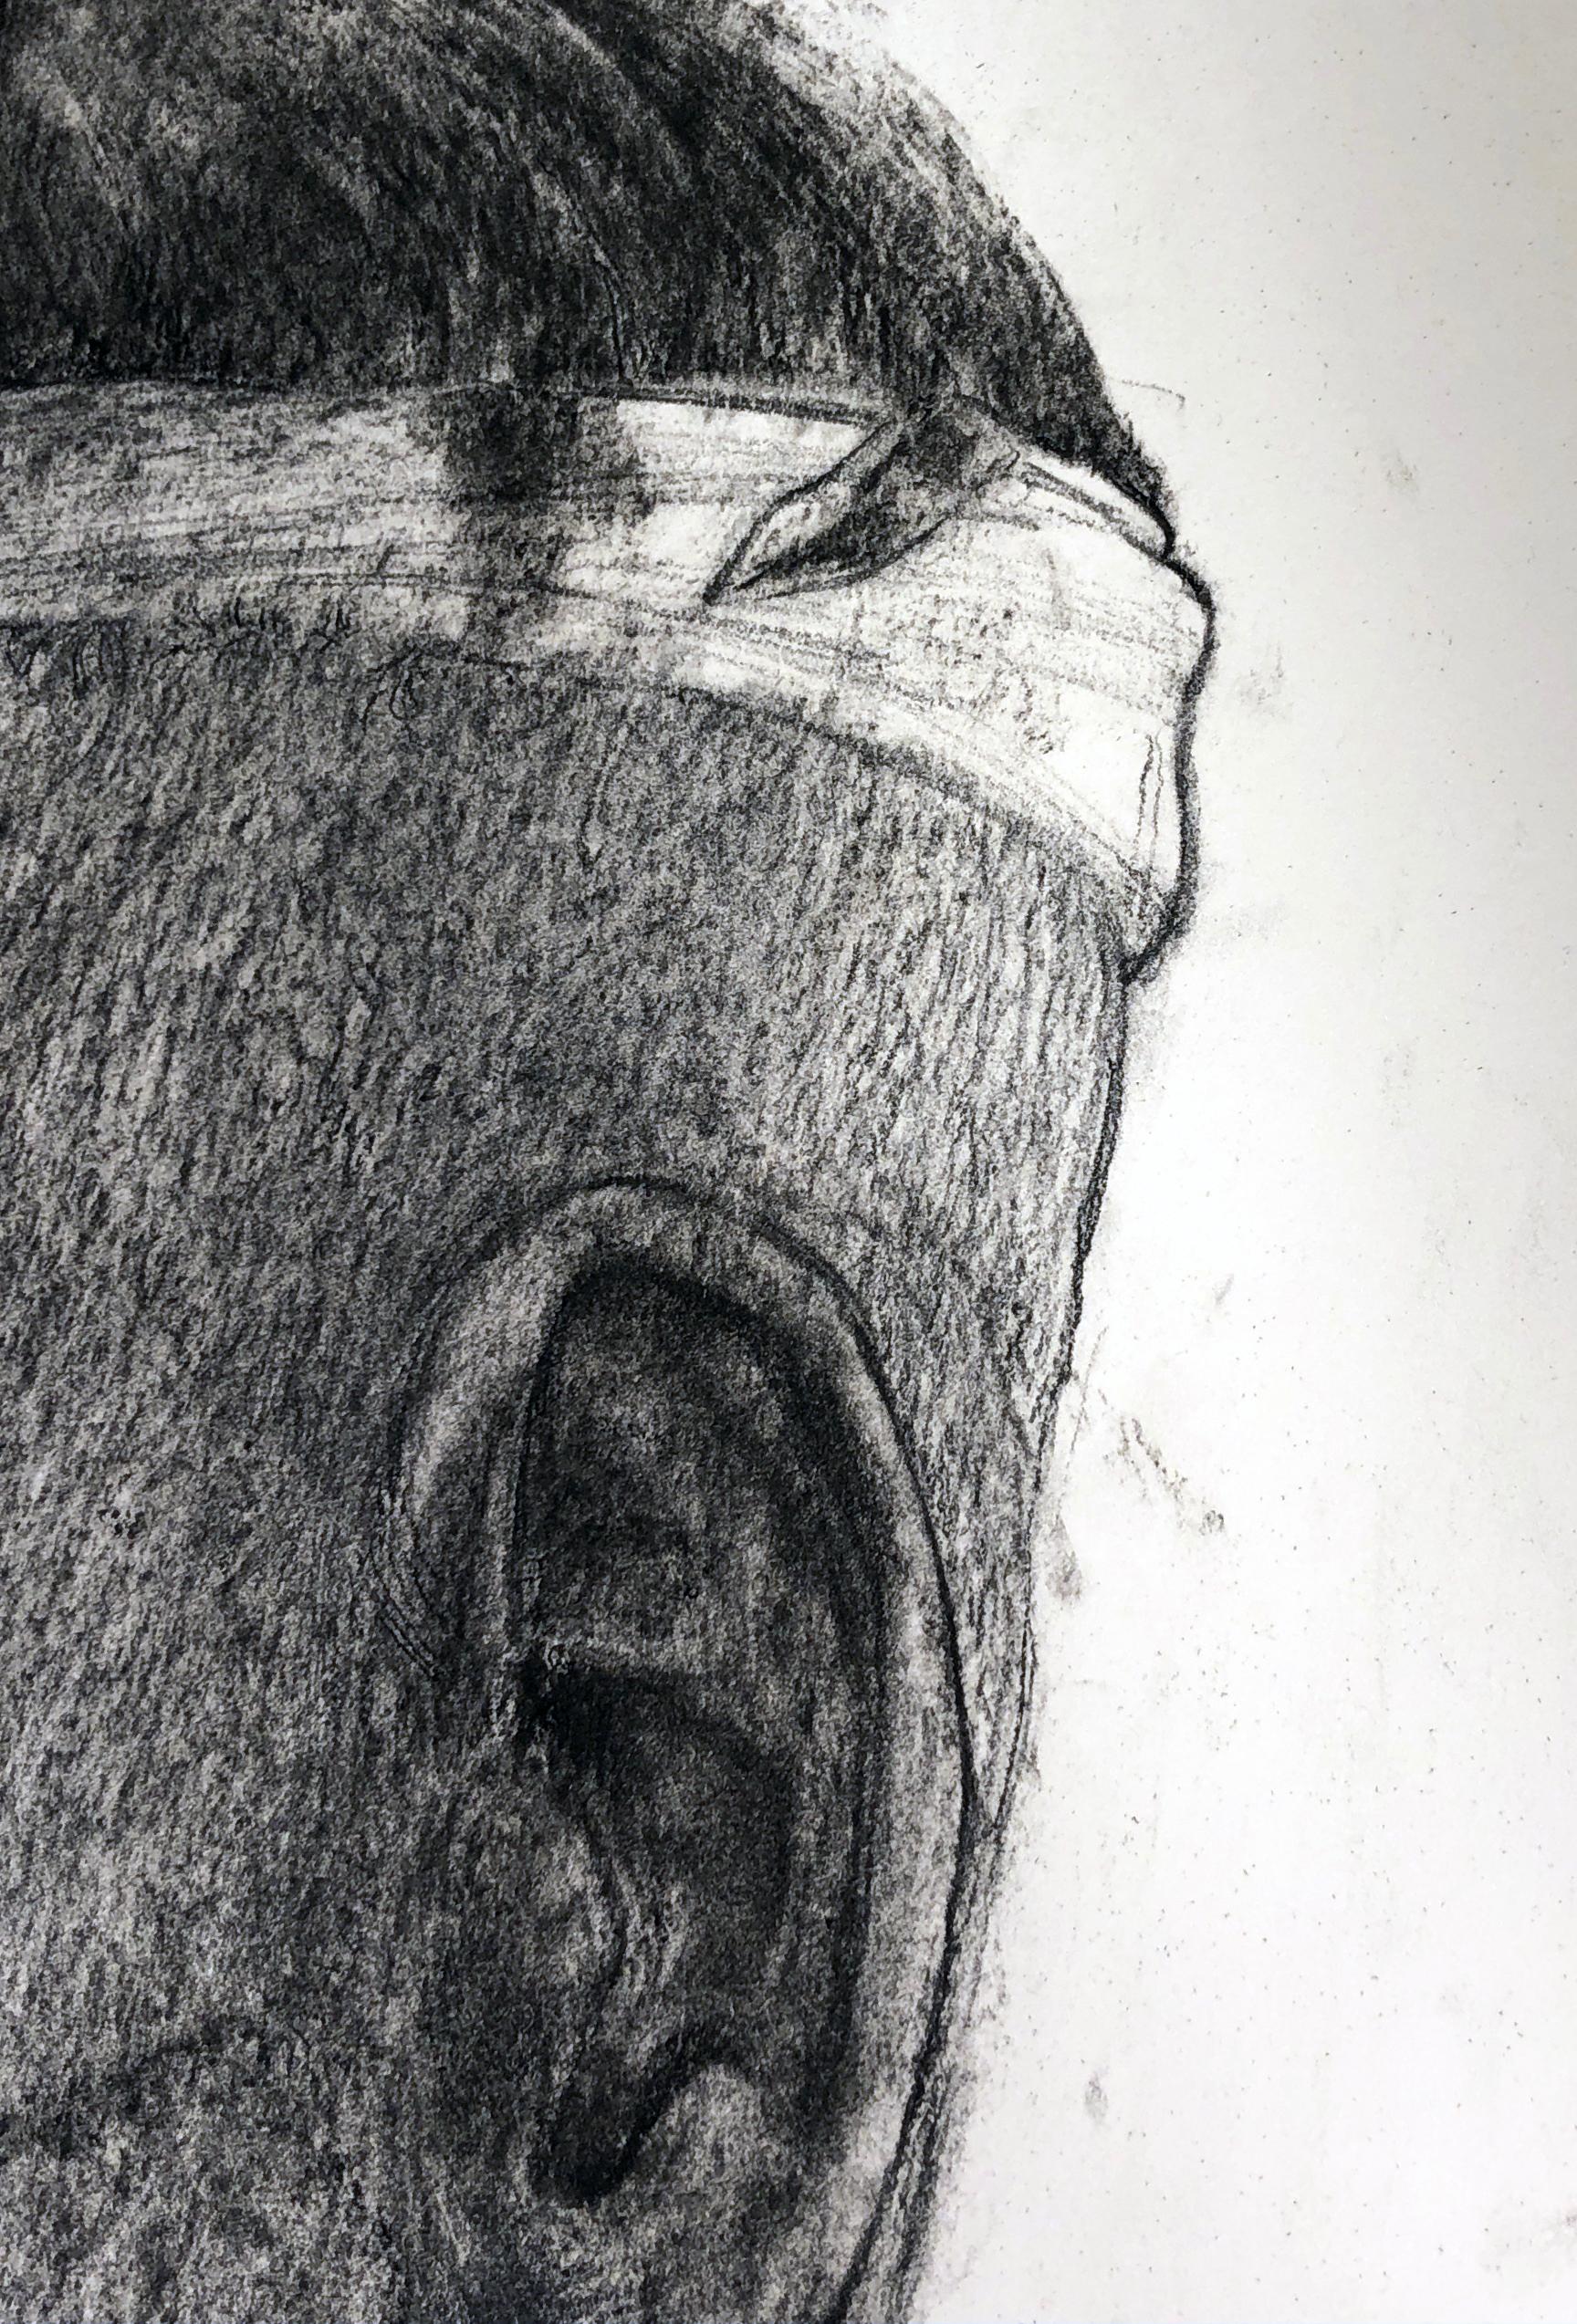 Sweat Band #3, Charcoal Drawing, Bust of a Man Wearing a Sweat Band - Gray Figurative Art by David Becker